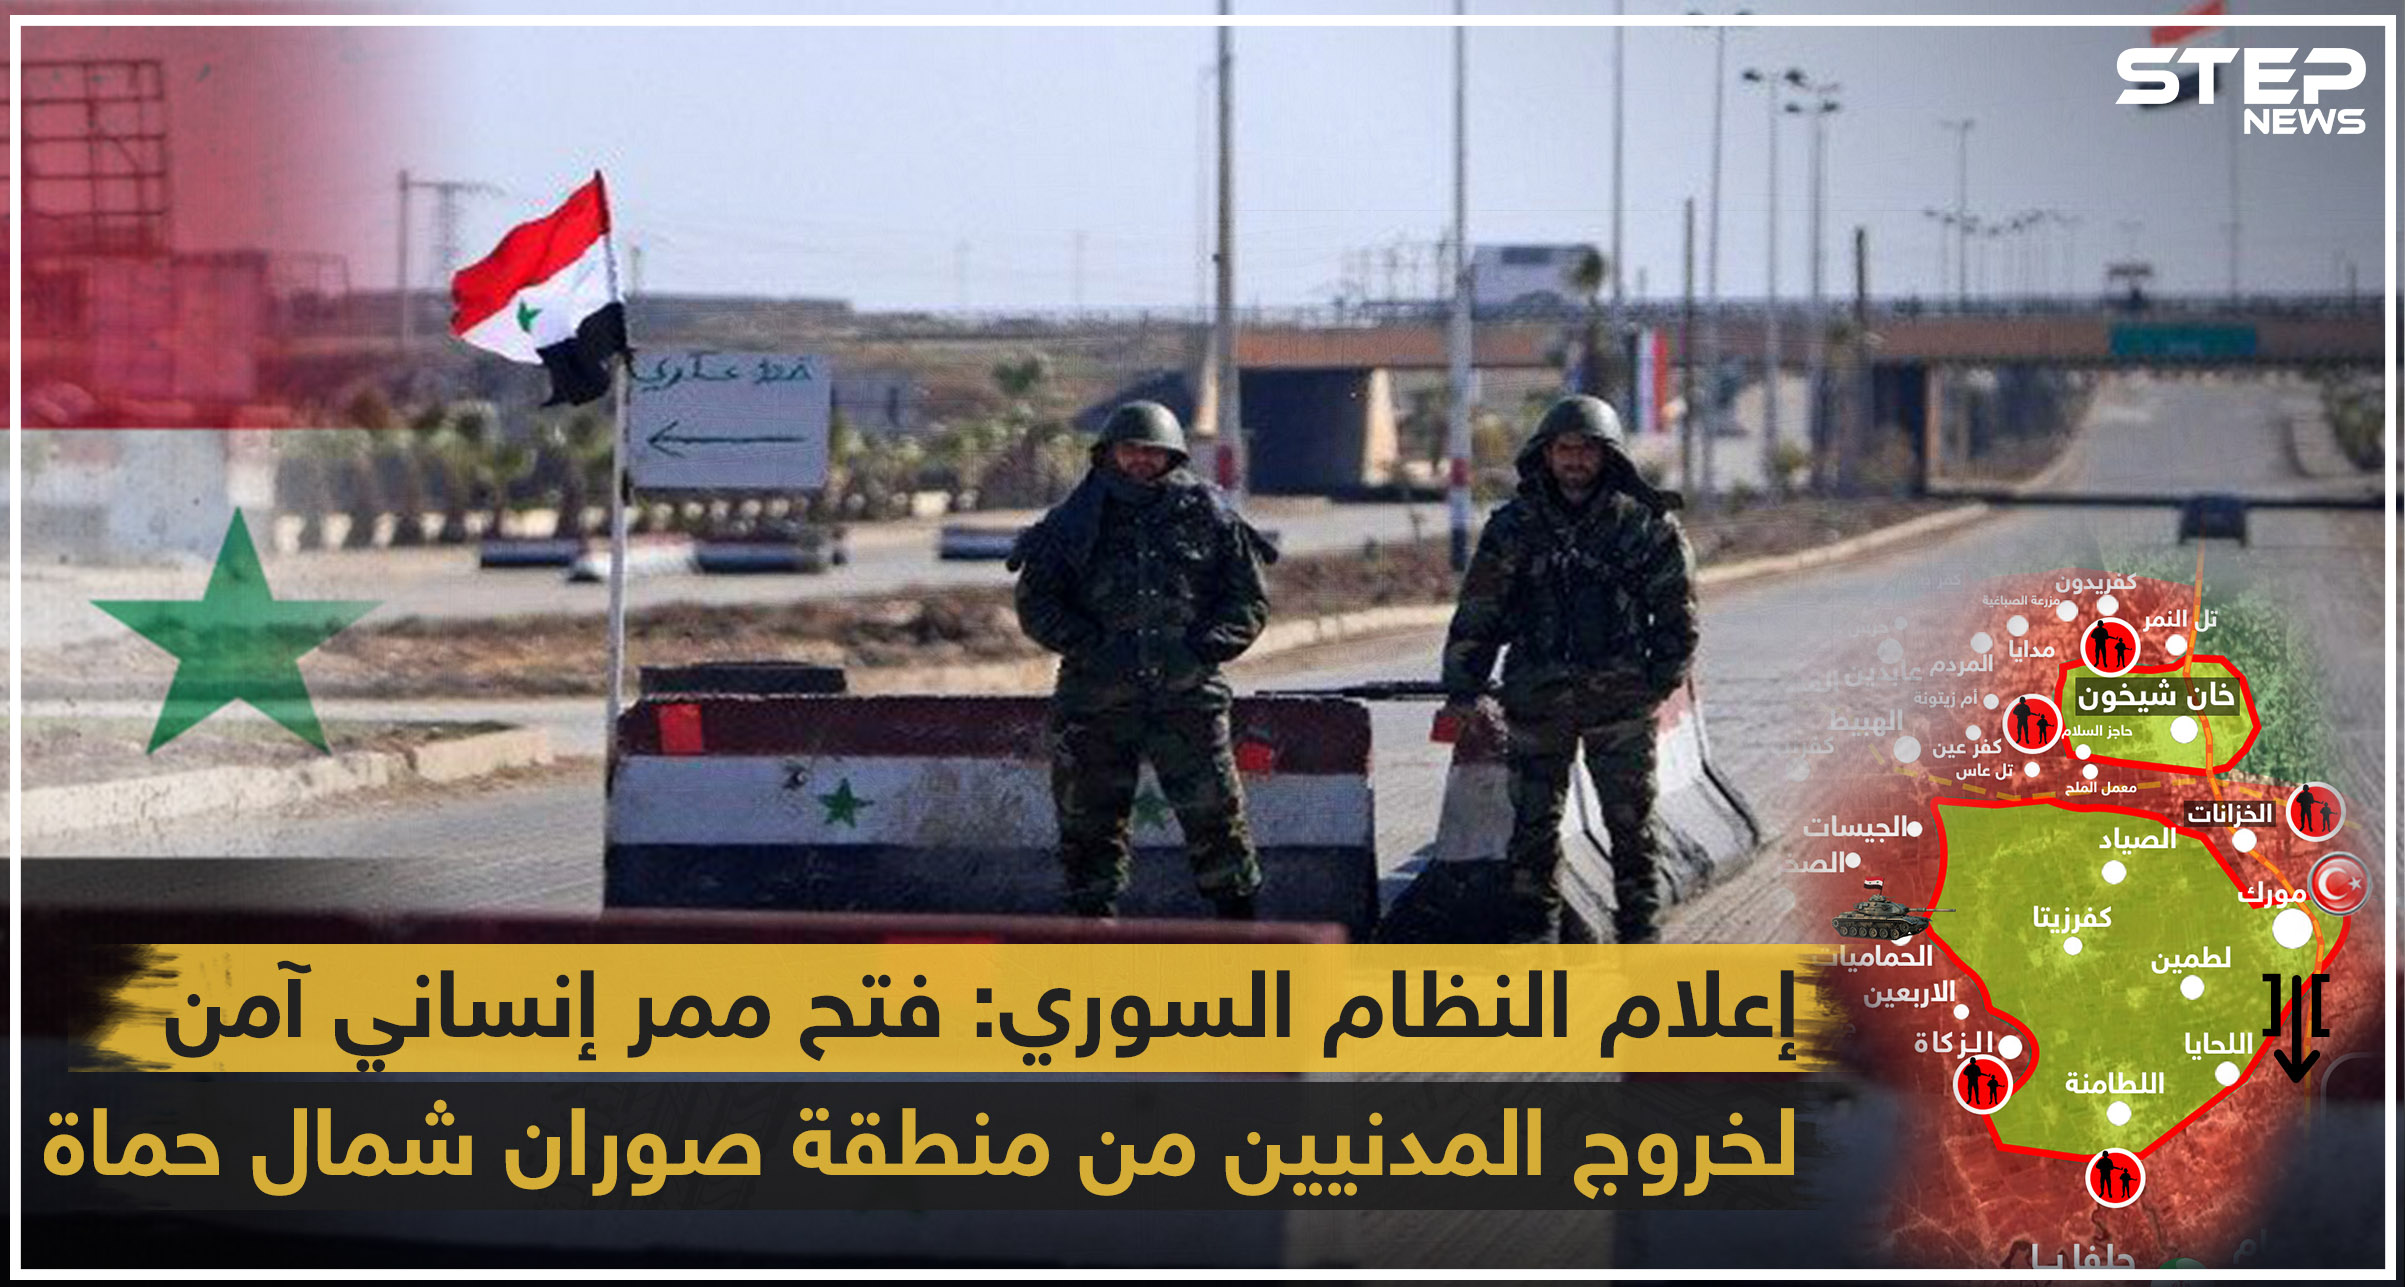 النظام يروّج لافتتاح معبر إنساني بريف حماة ومصادر تنفي أي تواجد مدني